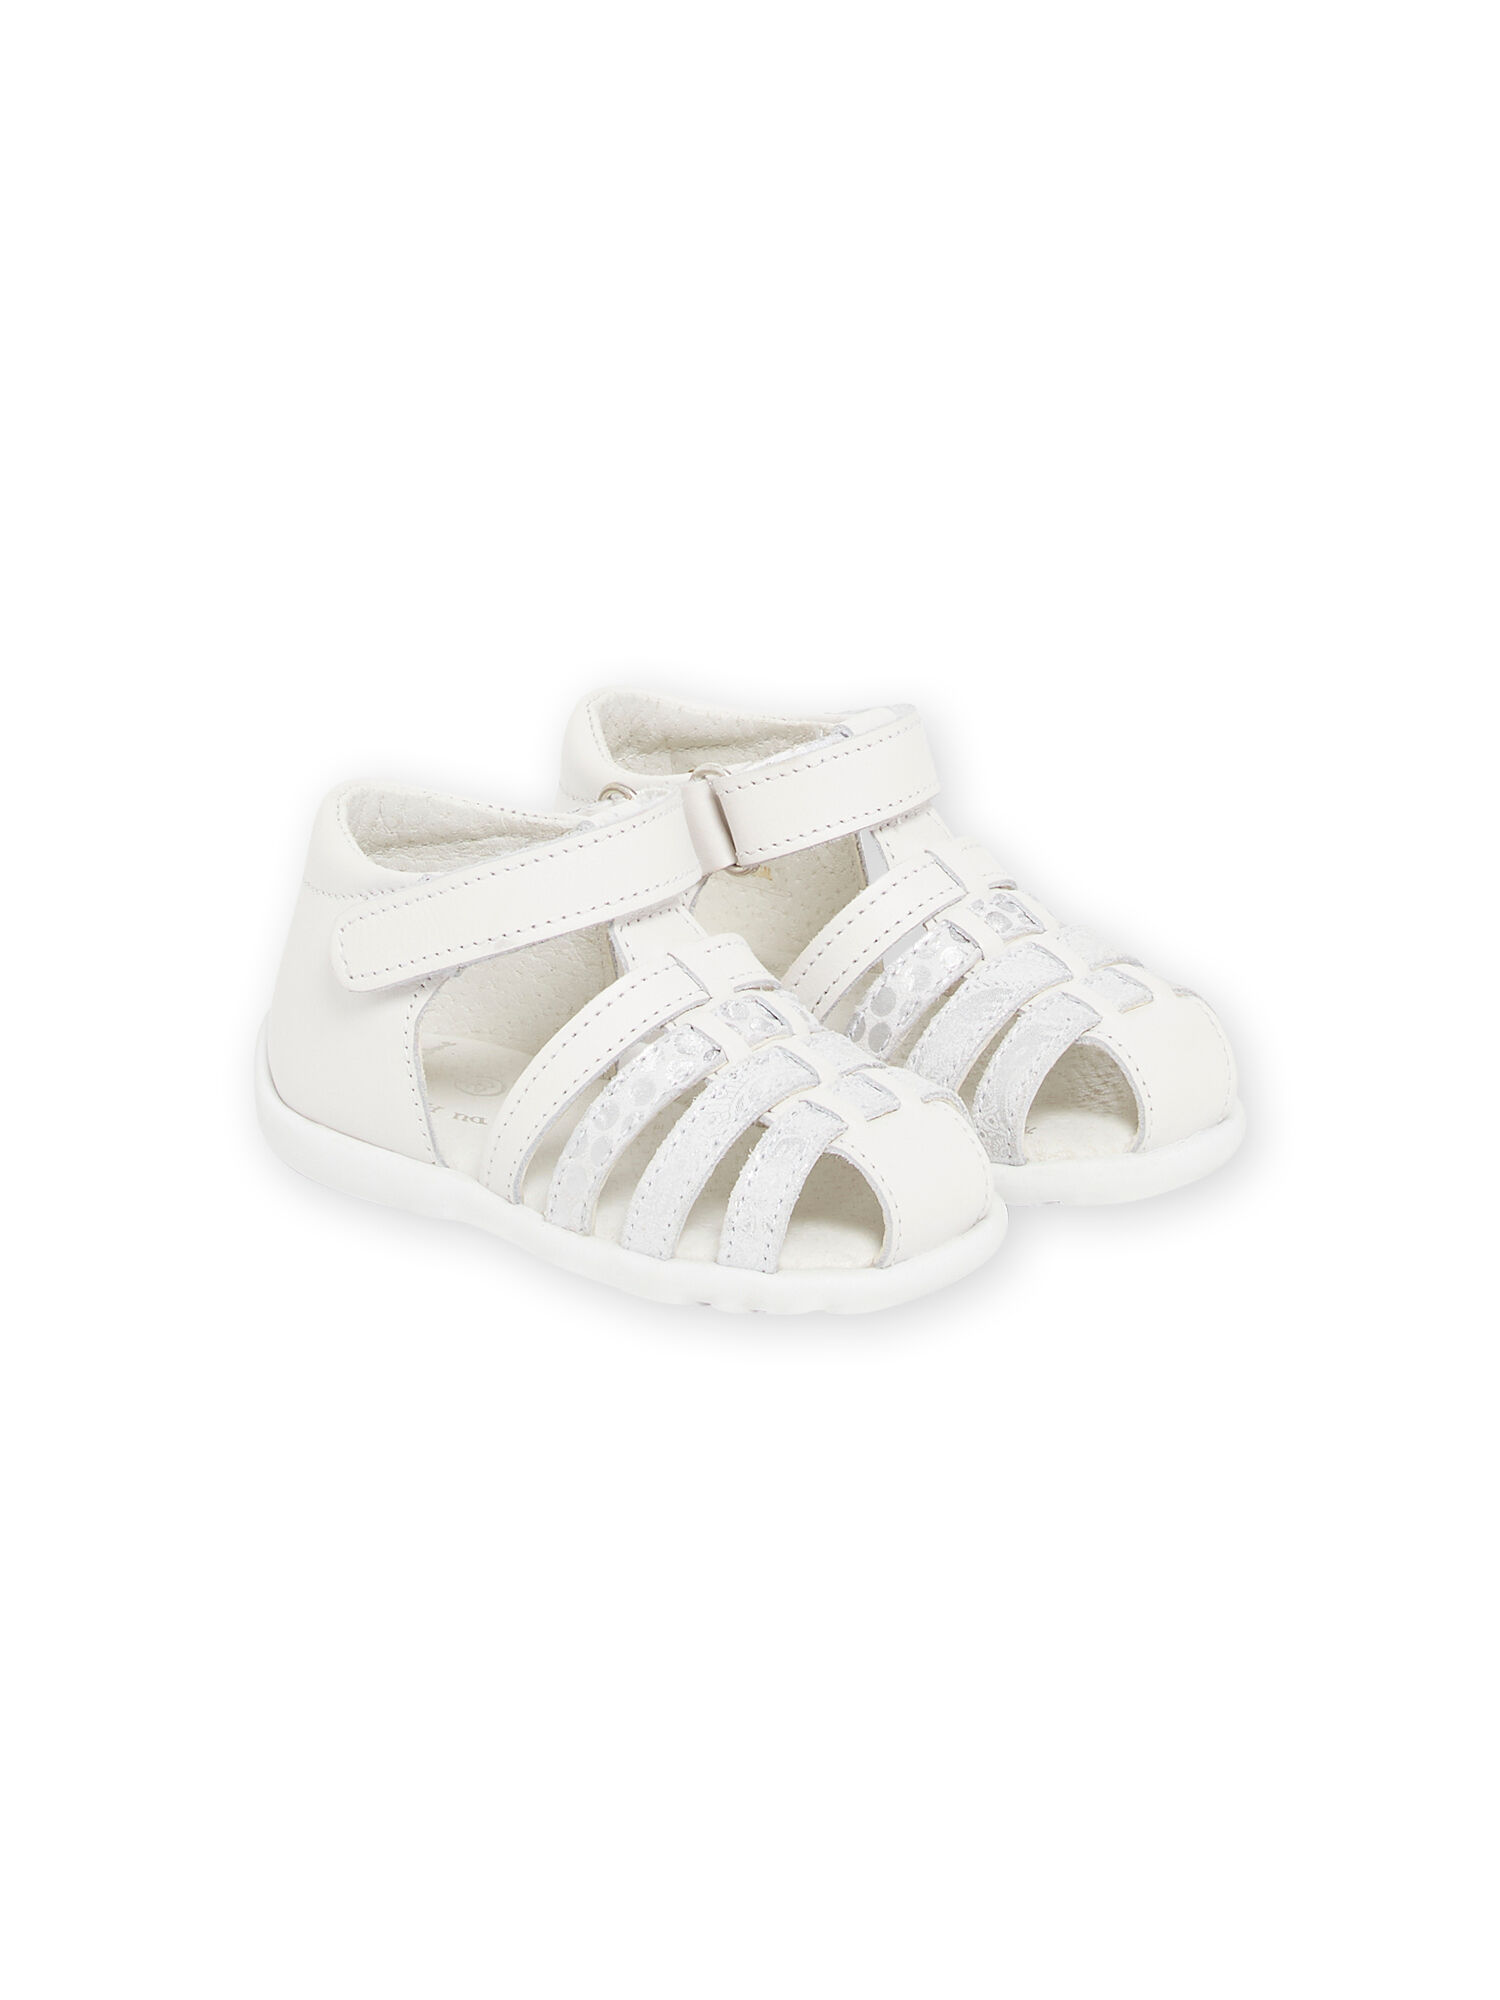 Pour bébé Princesse Chaussures d'été Sandales souples Sandales pour bébé de 0 à 6 à 12-18 mois Ghemdilmn Sandales pour bébé fille Fleurs 